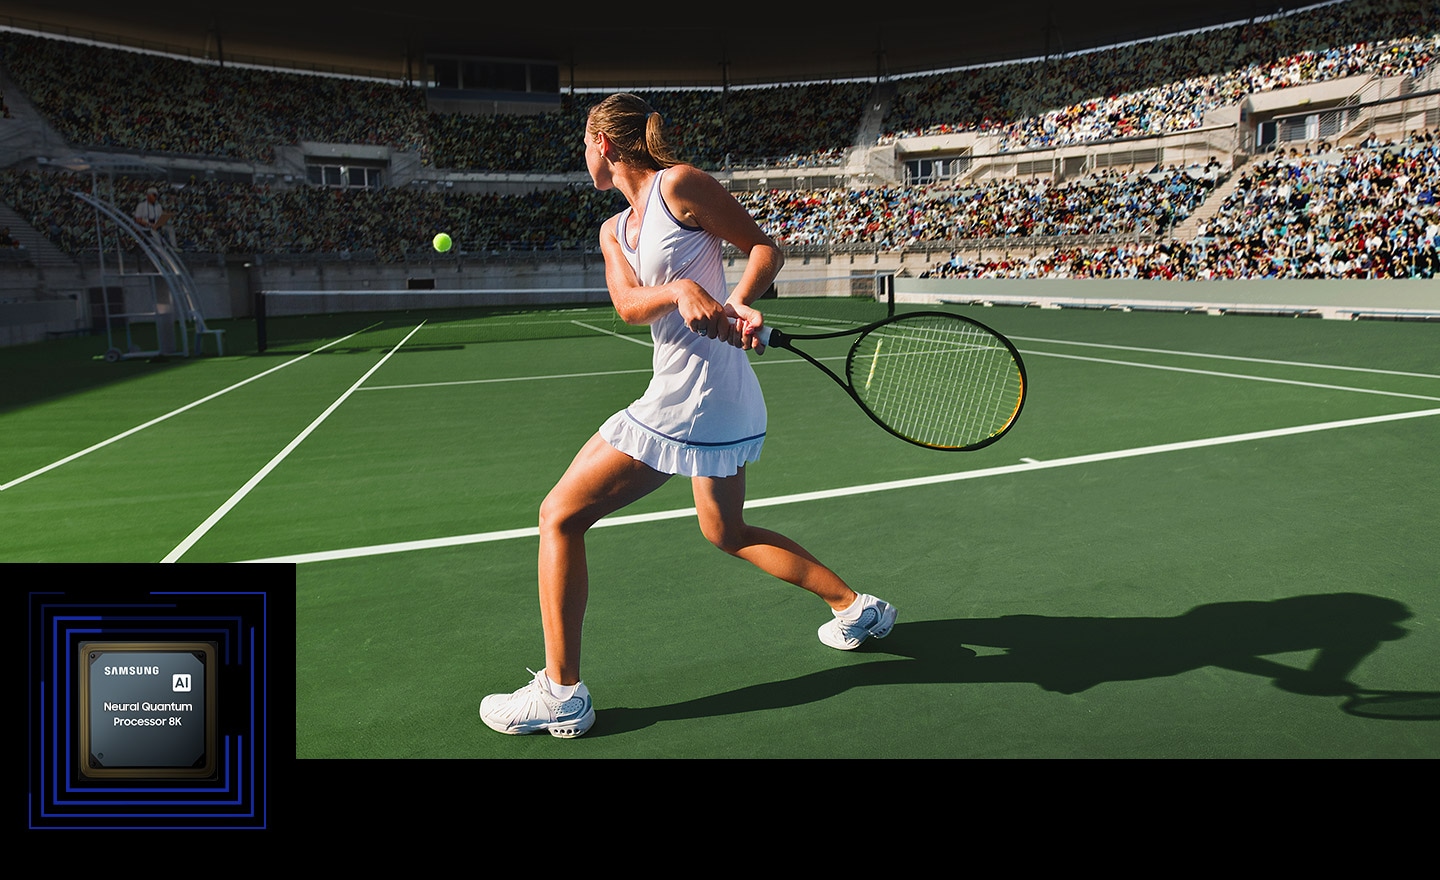 Một người phụ nữ đang chơi tennis trước một đám đông lớn. Bộ xử lý lượng tử Neo 8K được hiển thị ở góc dưới bên trái.